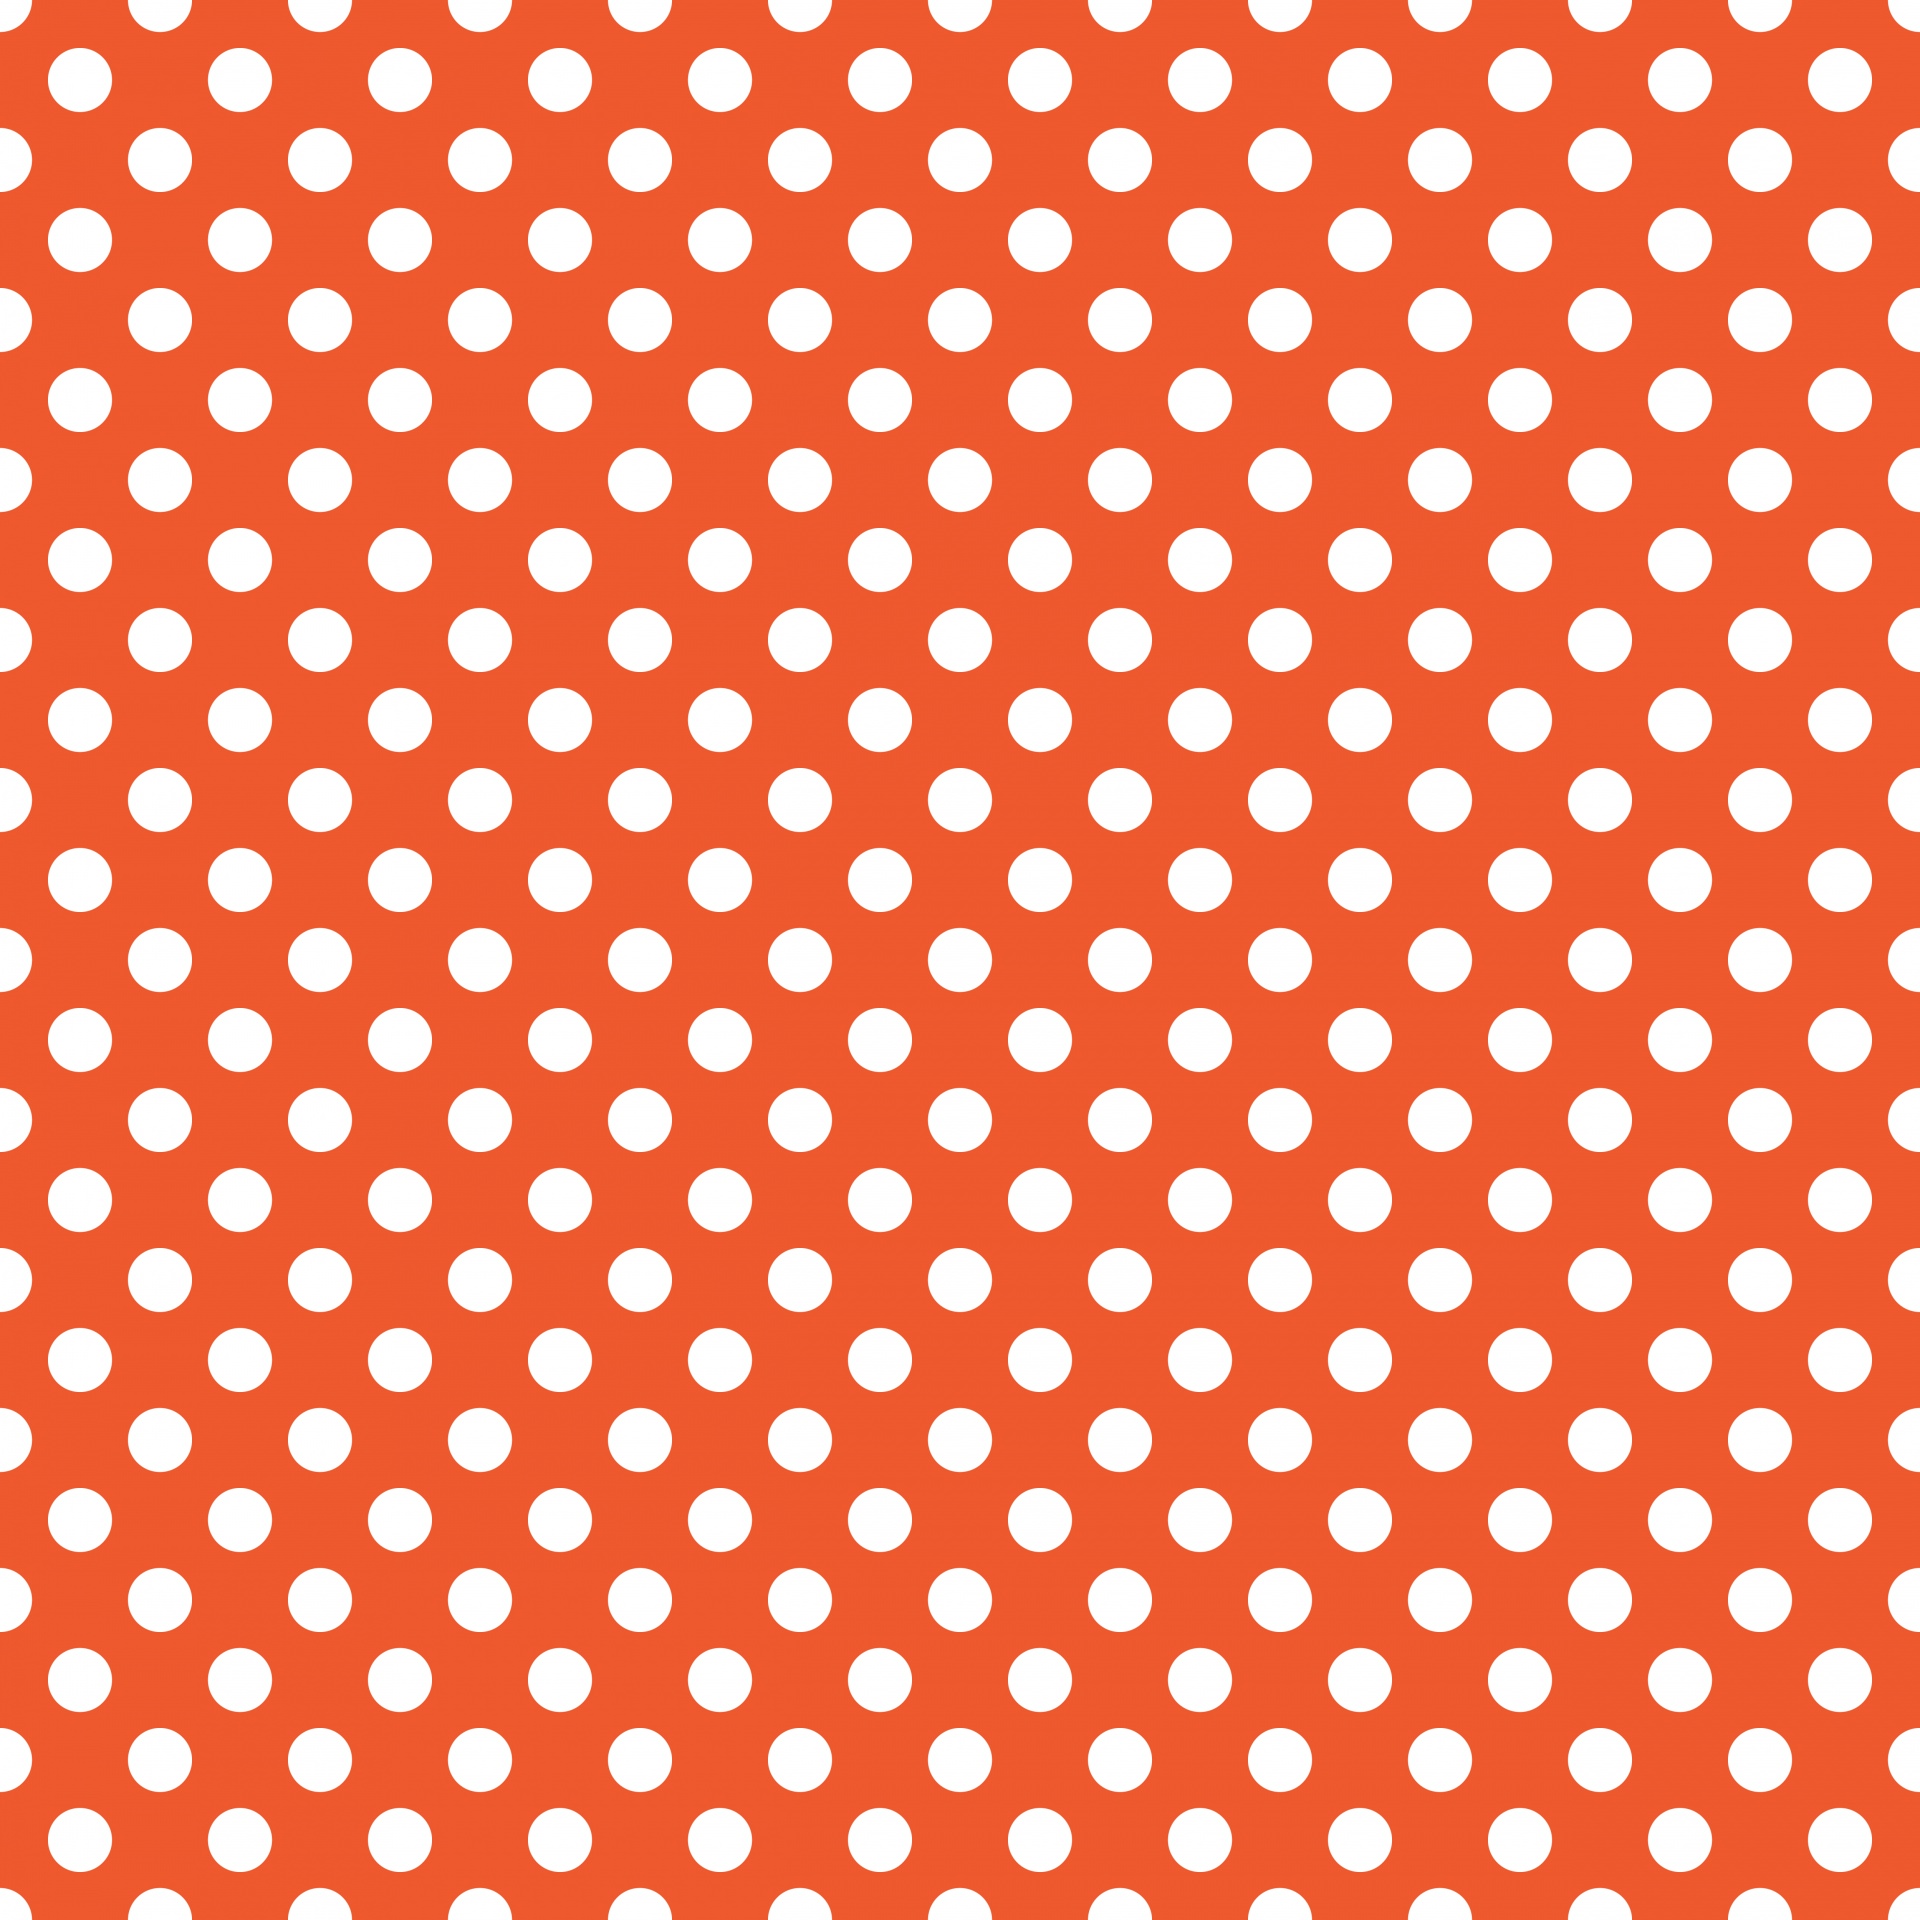 Polka Dots Orange White